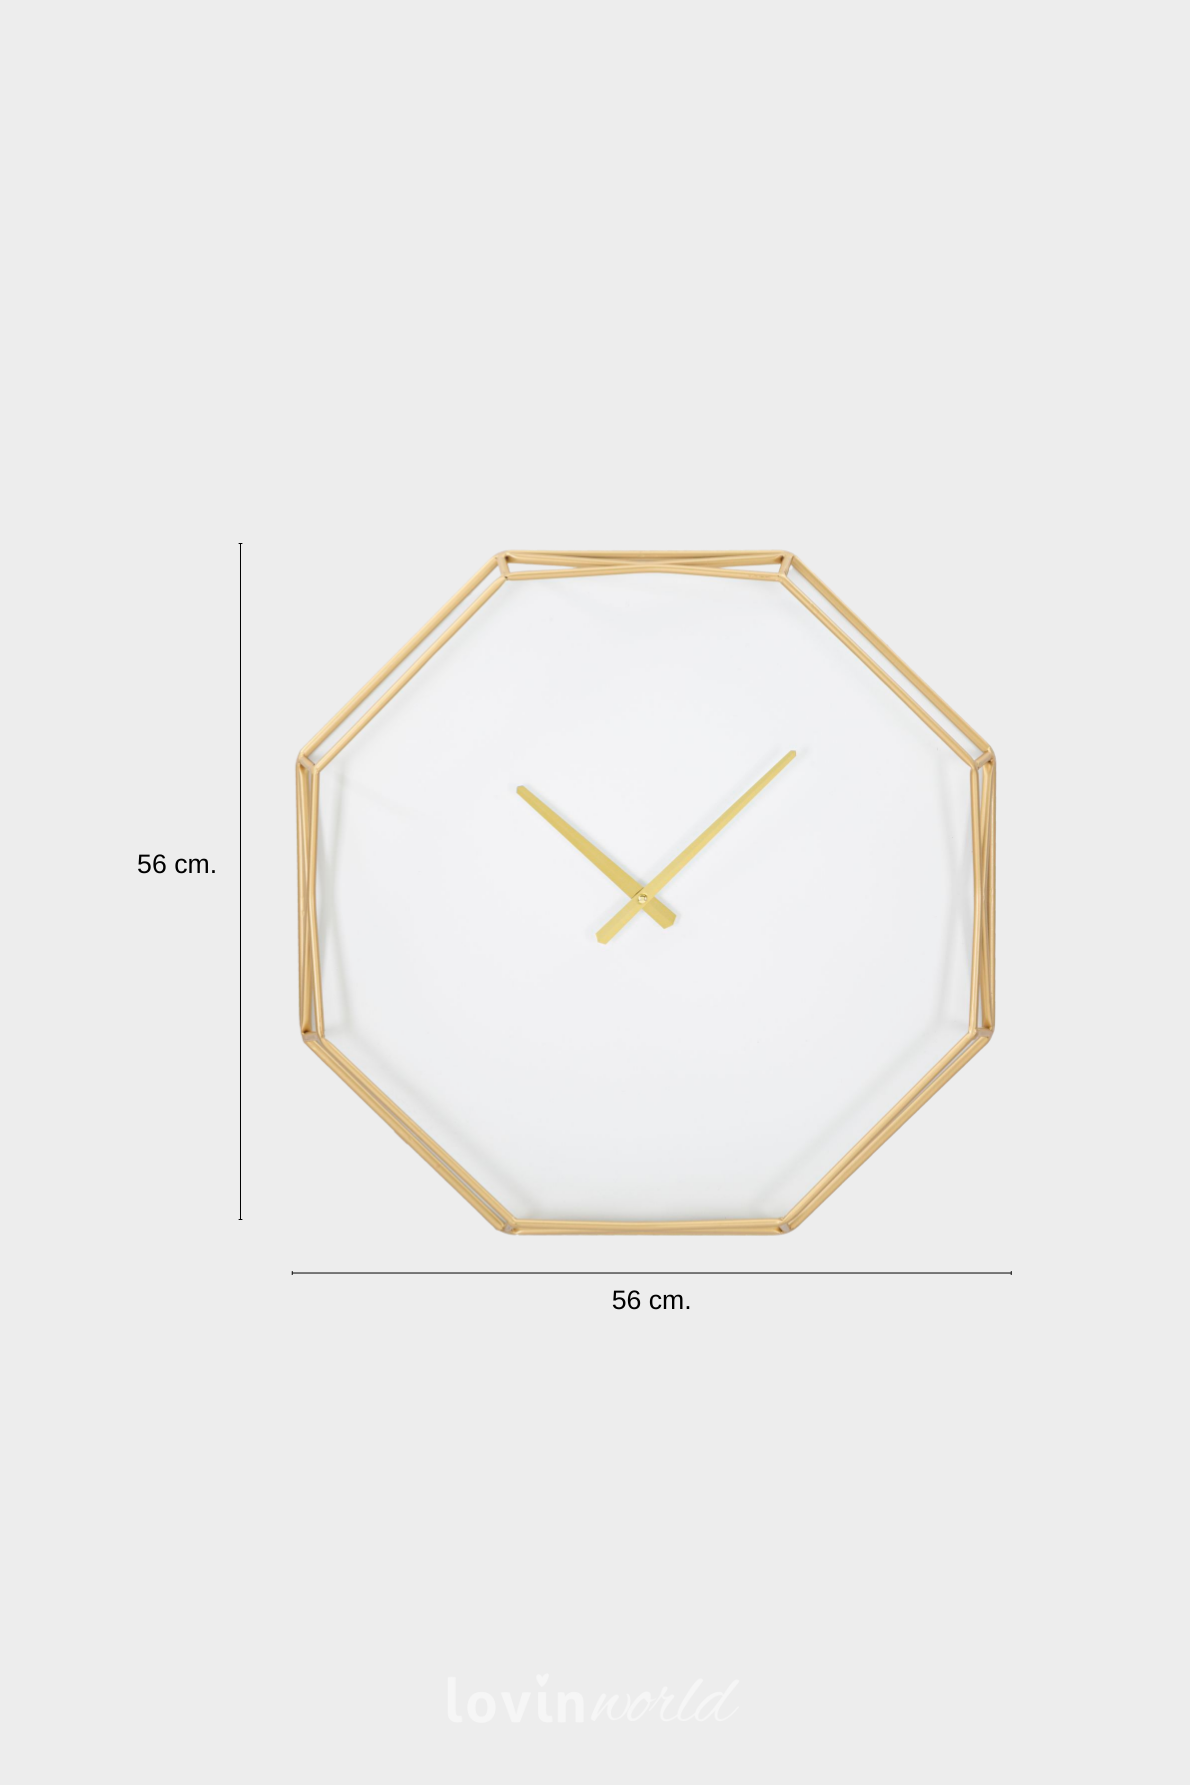 Orologio da muro Goldy Octagonal, 56x56 cm.-4